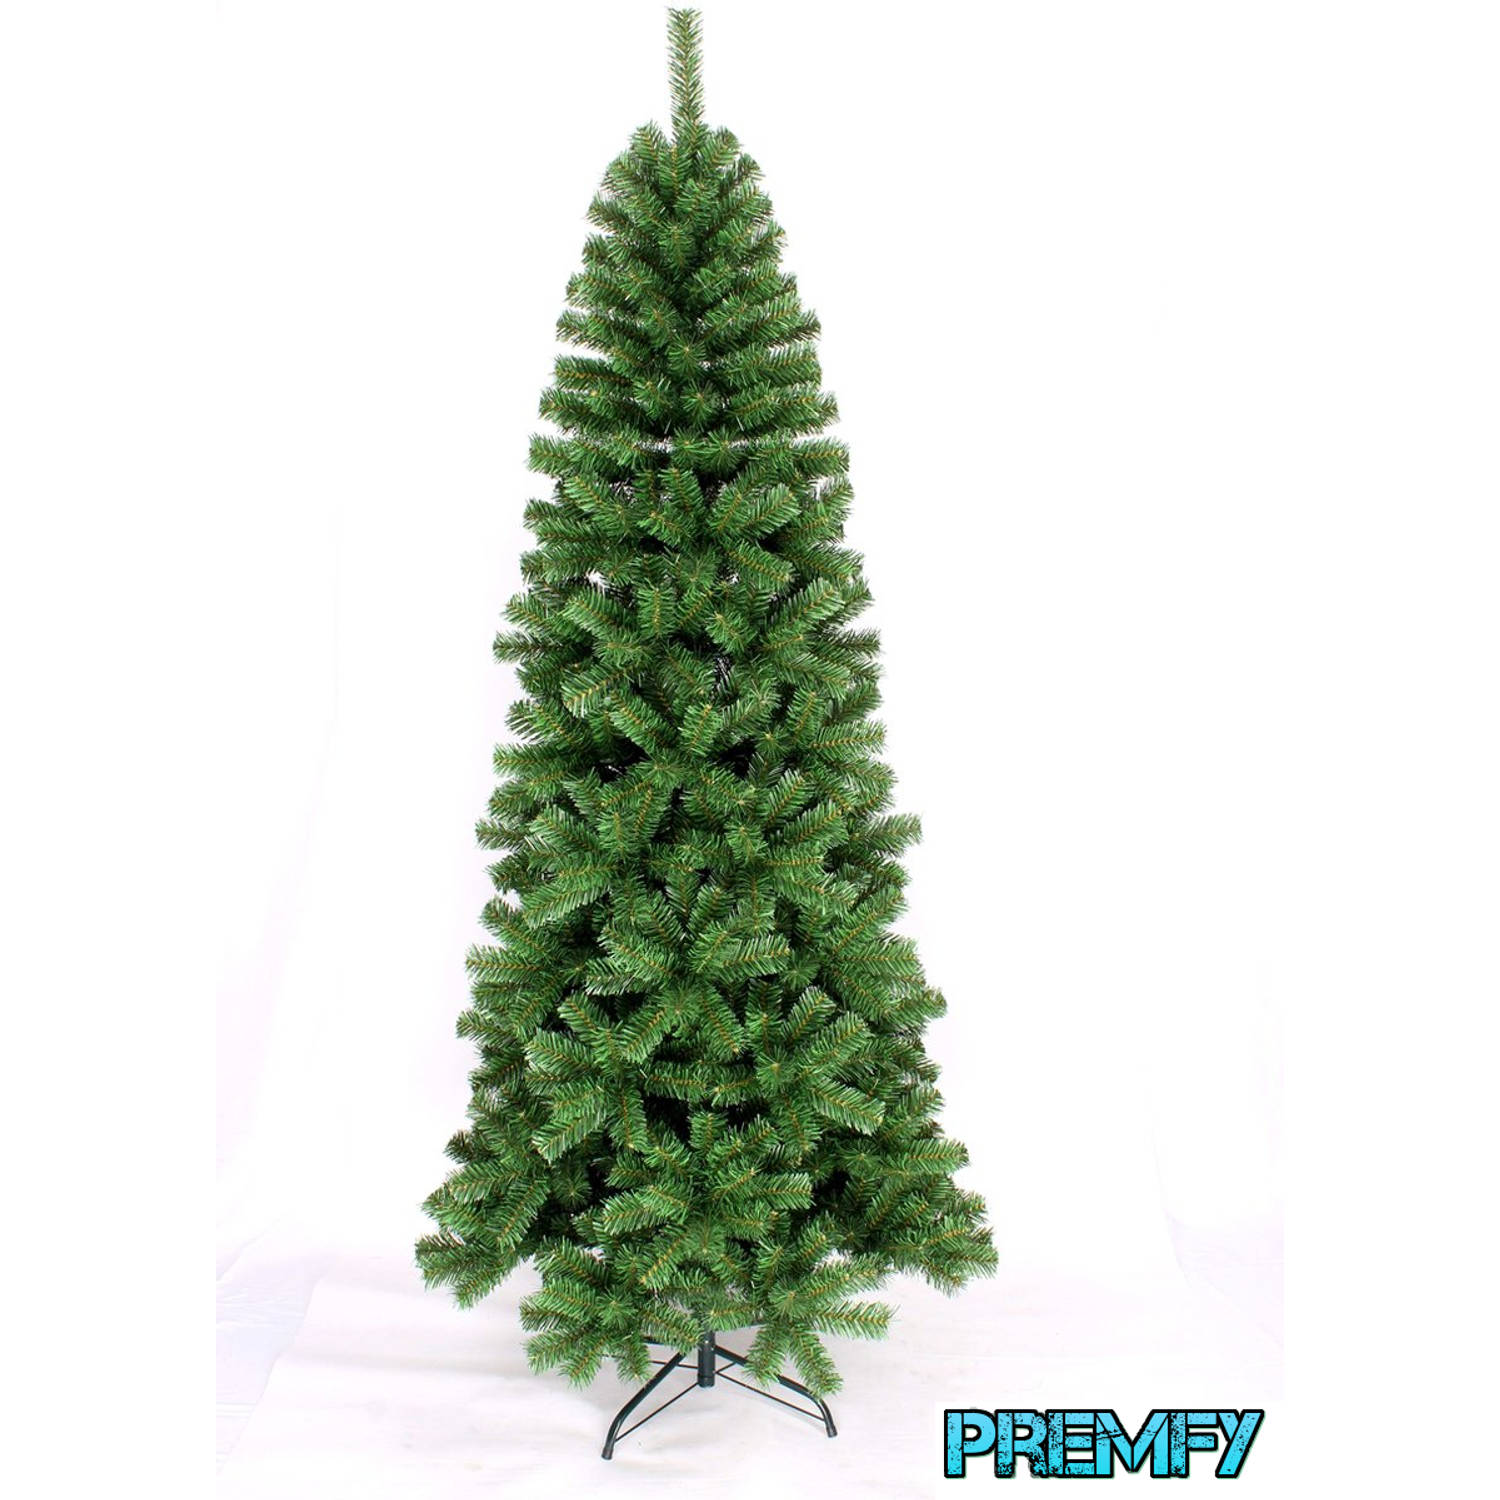 Premfy Smalle Kunstkerstboom 180cm met 550 takken mooi vol groen zonder verlichting Pencil Pine